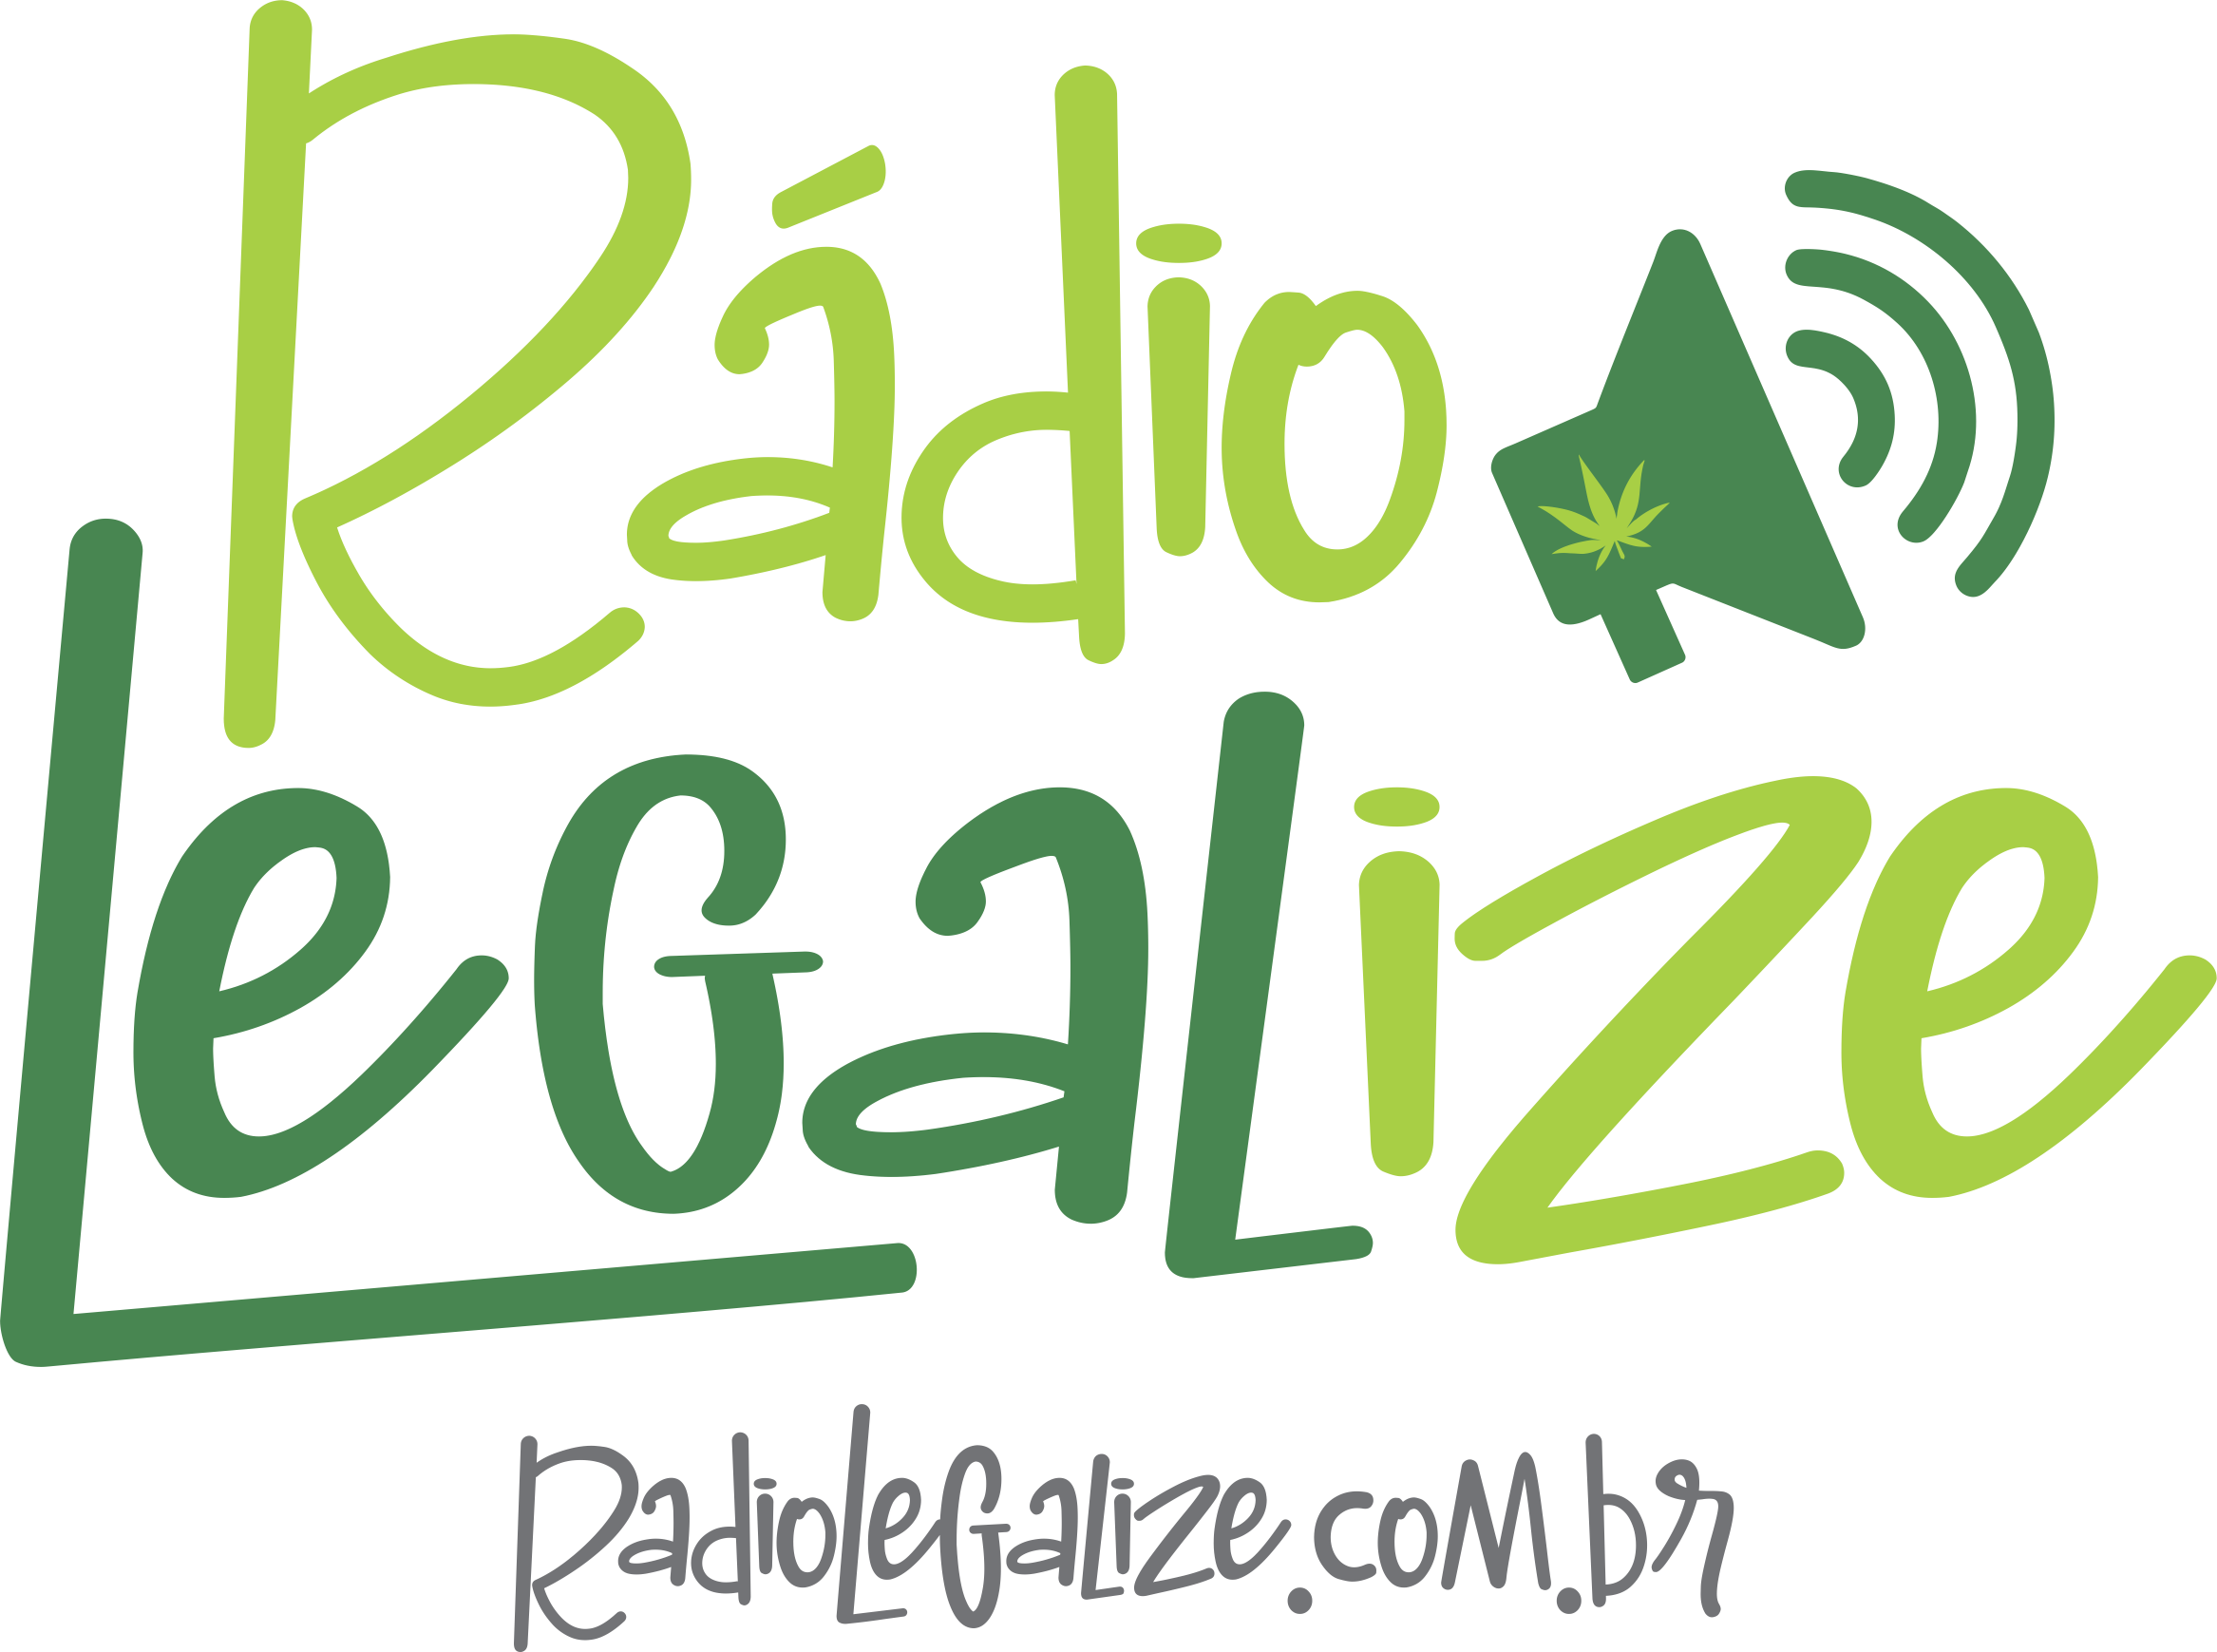 Radio Legalize